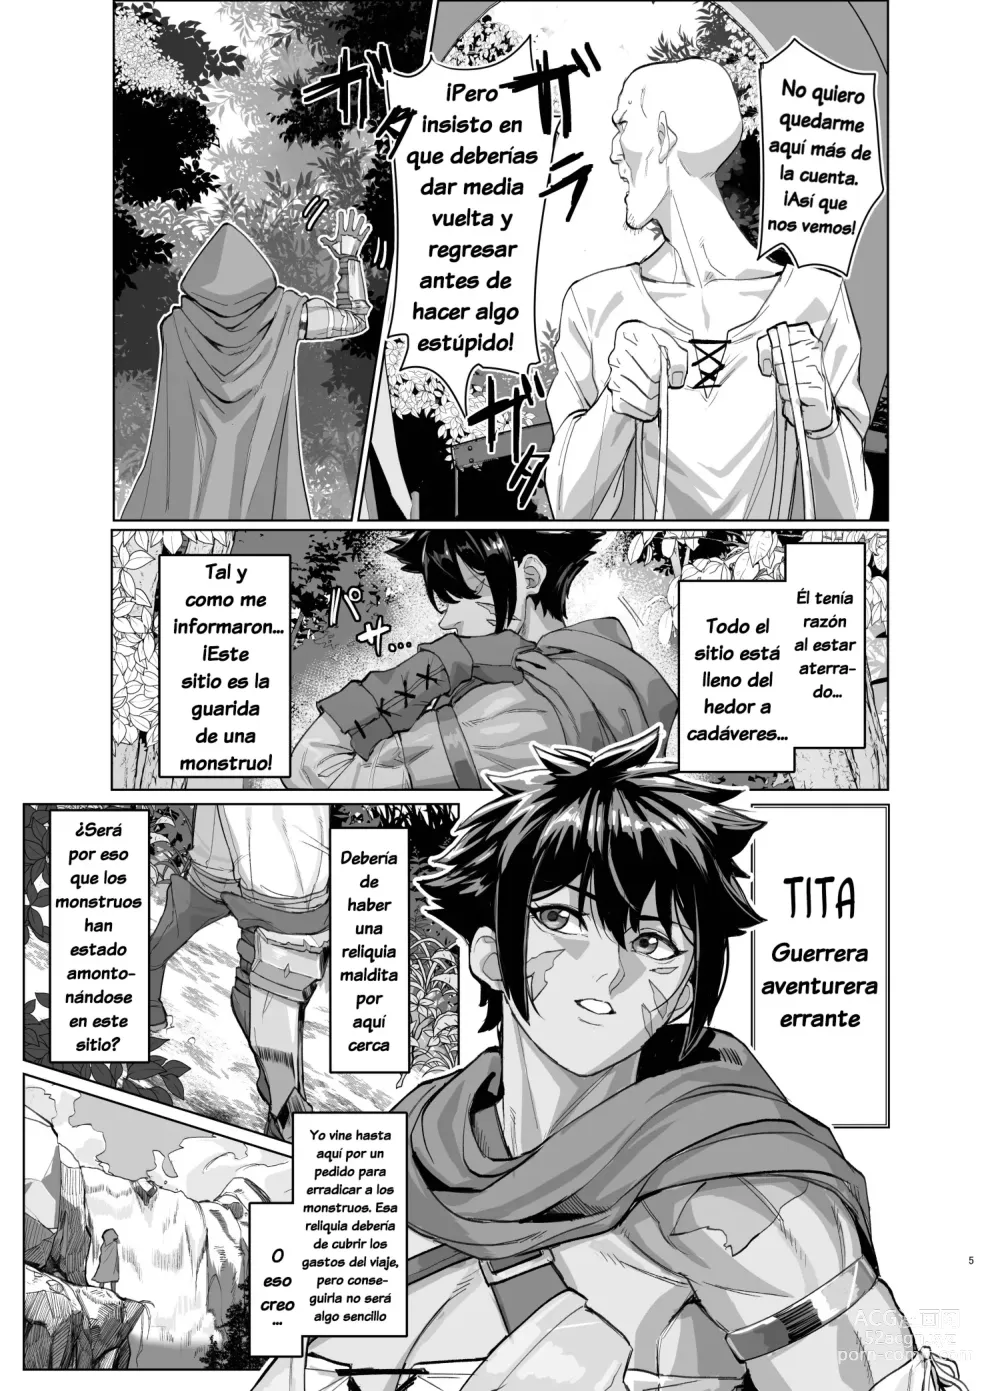 Page 4 of doujinshi Una Mujer Guerrera en Problemas